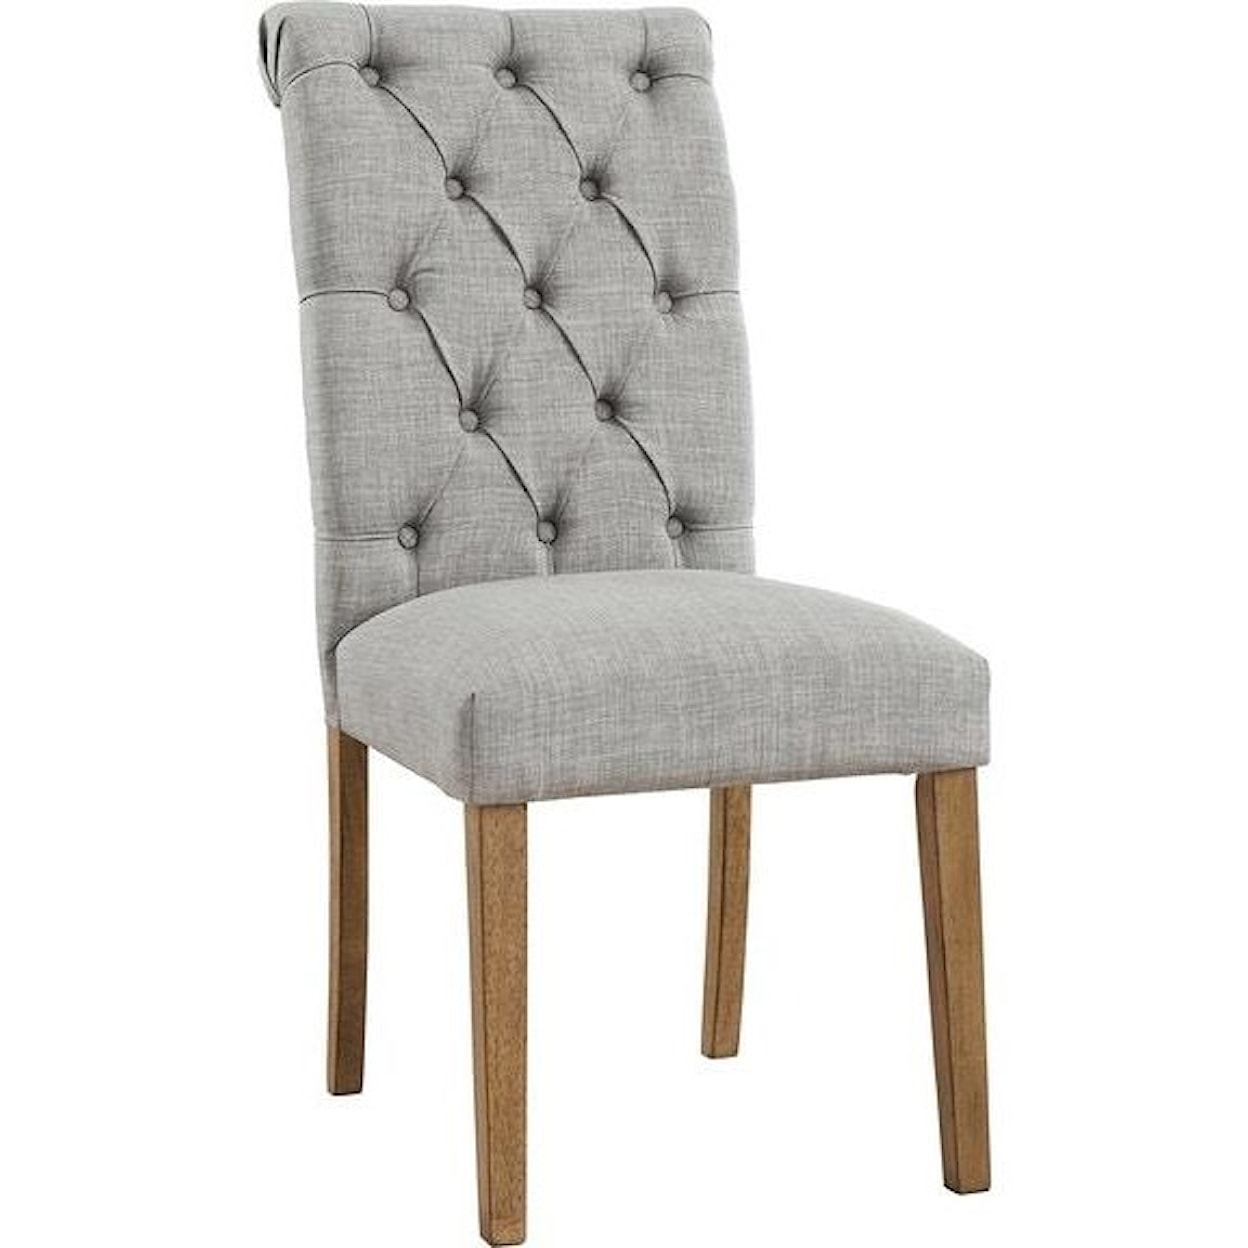 Ashley Furniture Harvina Harvina Light Grey Upholstered Side Chair